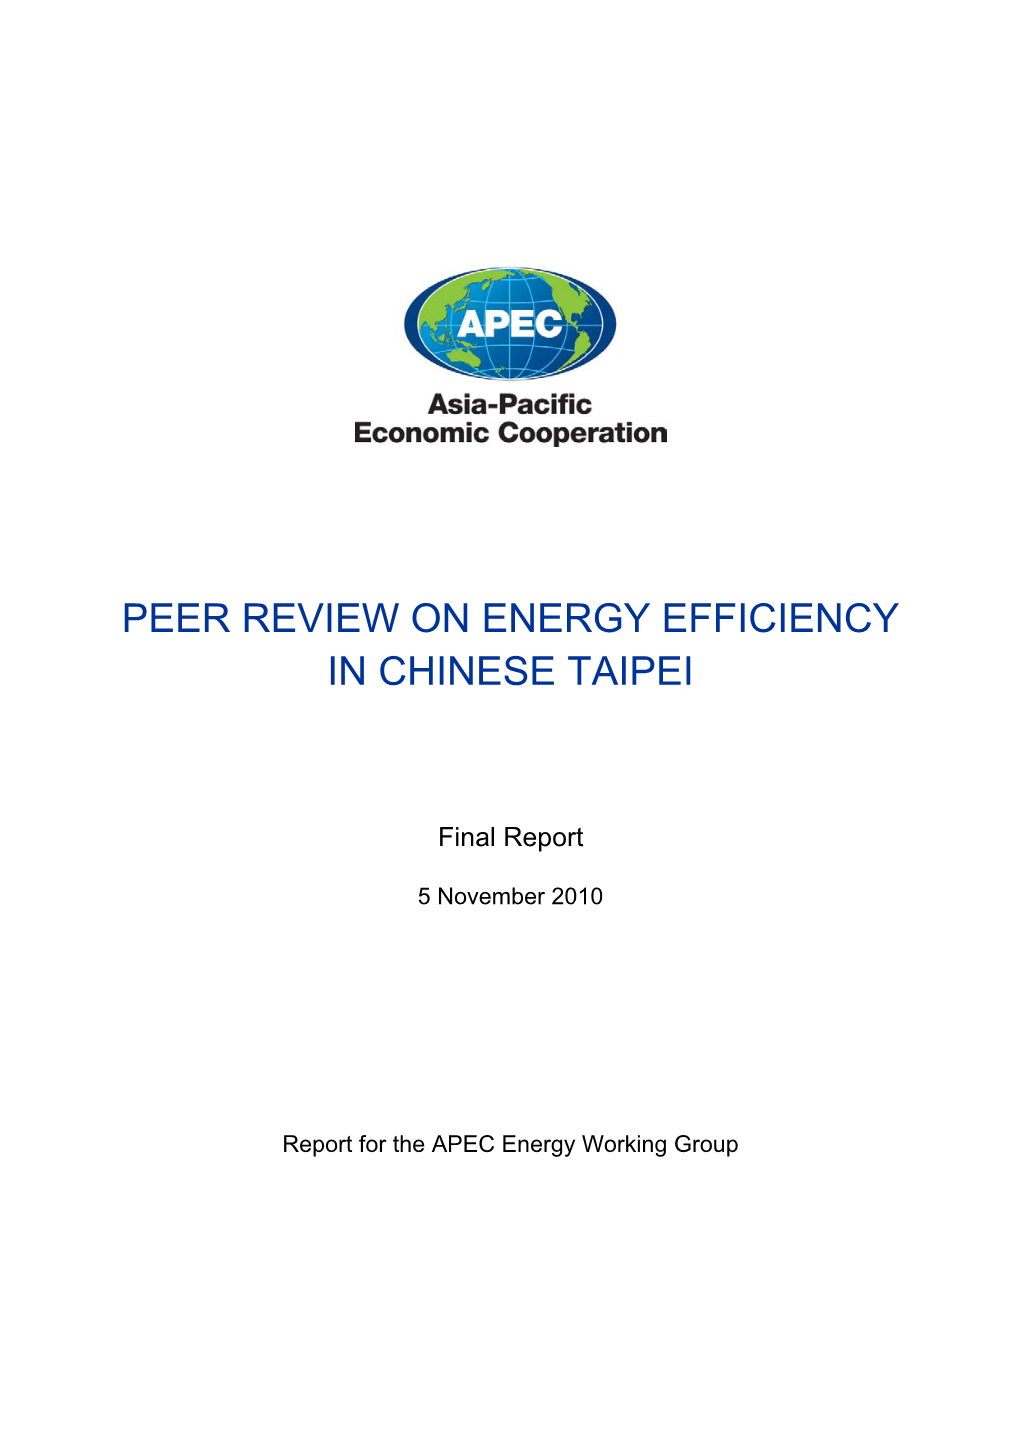 Peer Review on Energy Efficiency in Chinese Taipei